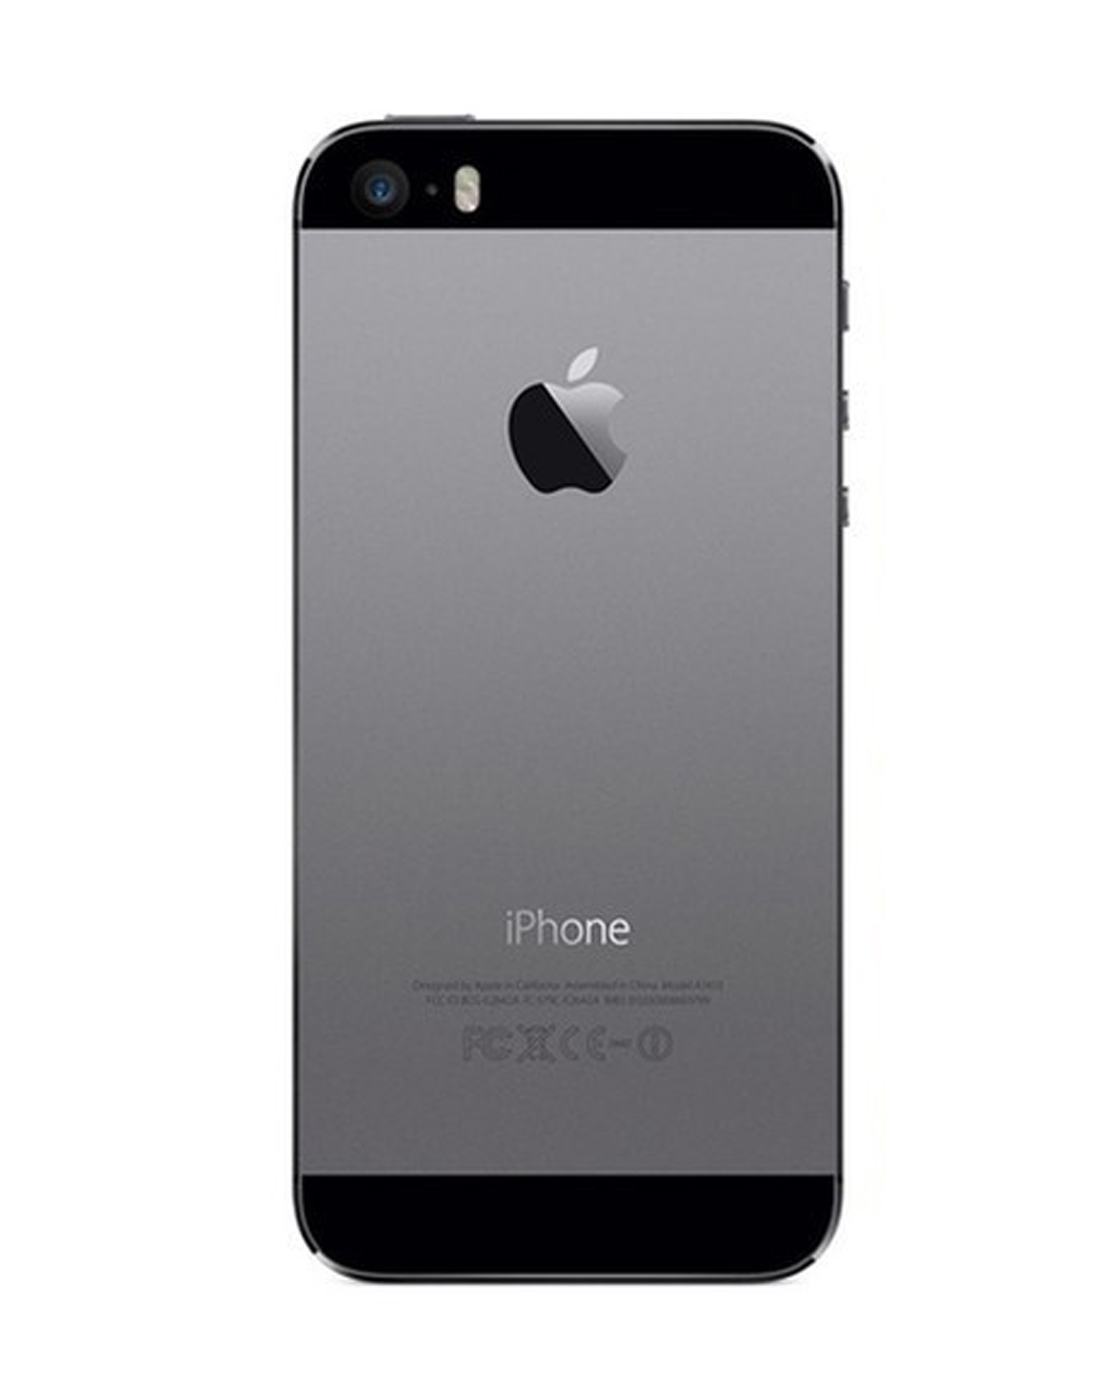 苹果iphone5s手机 16g 0元购机 送专属靓号 微信6g流量 灰色